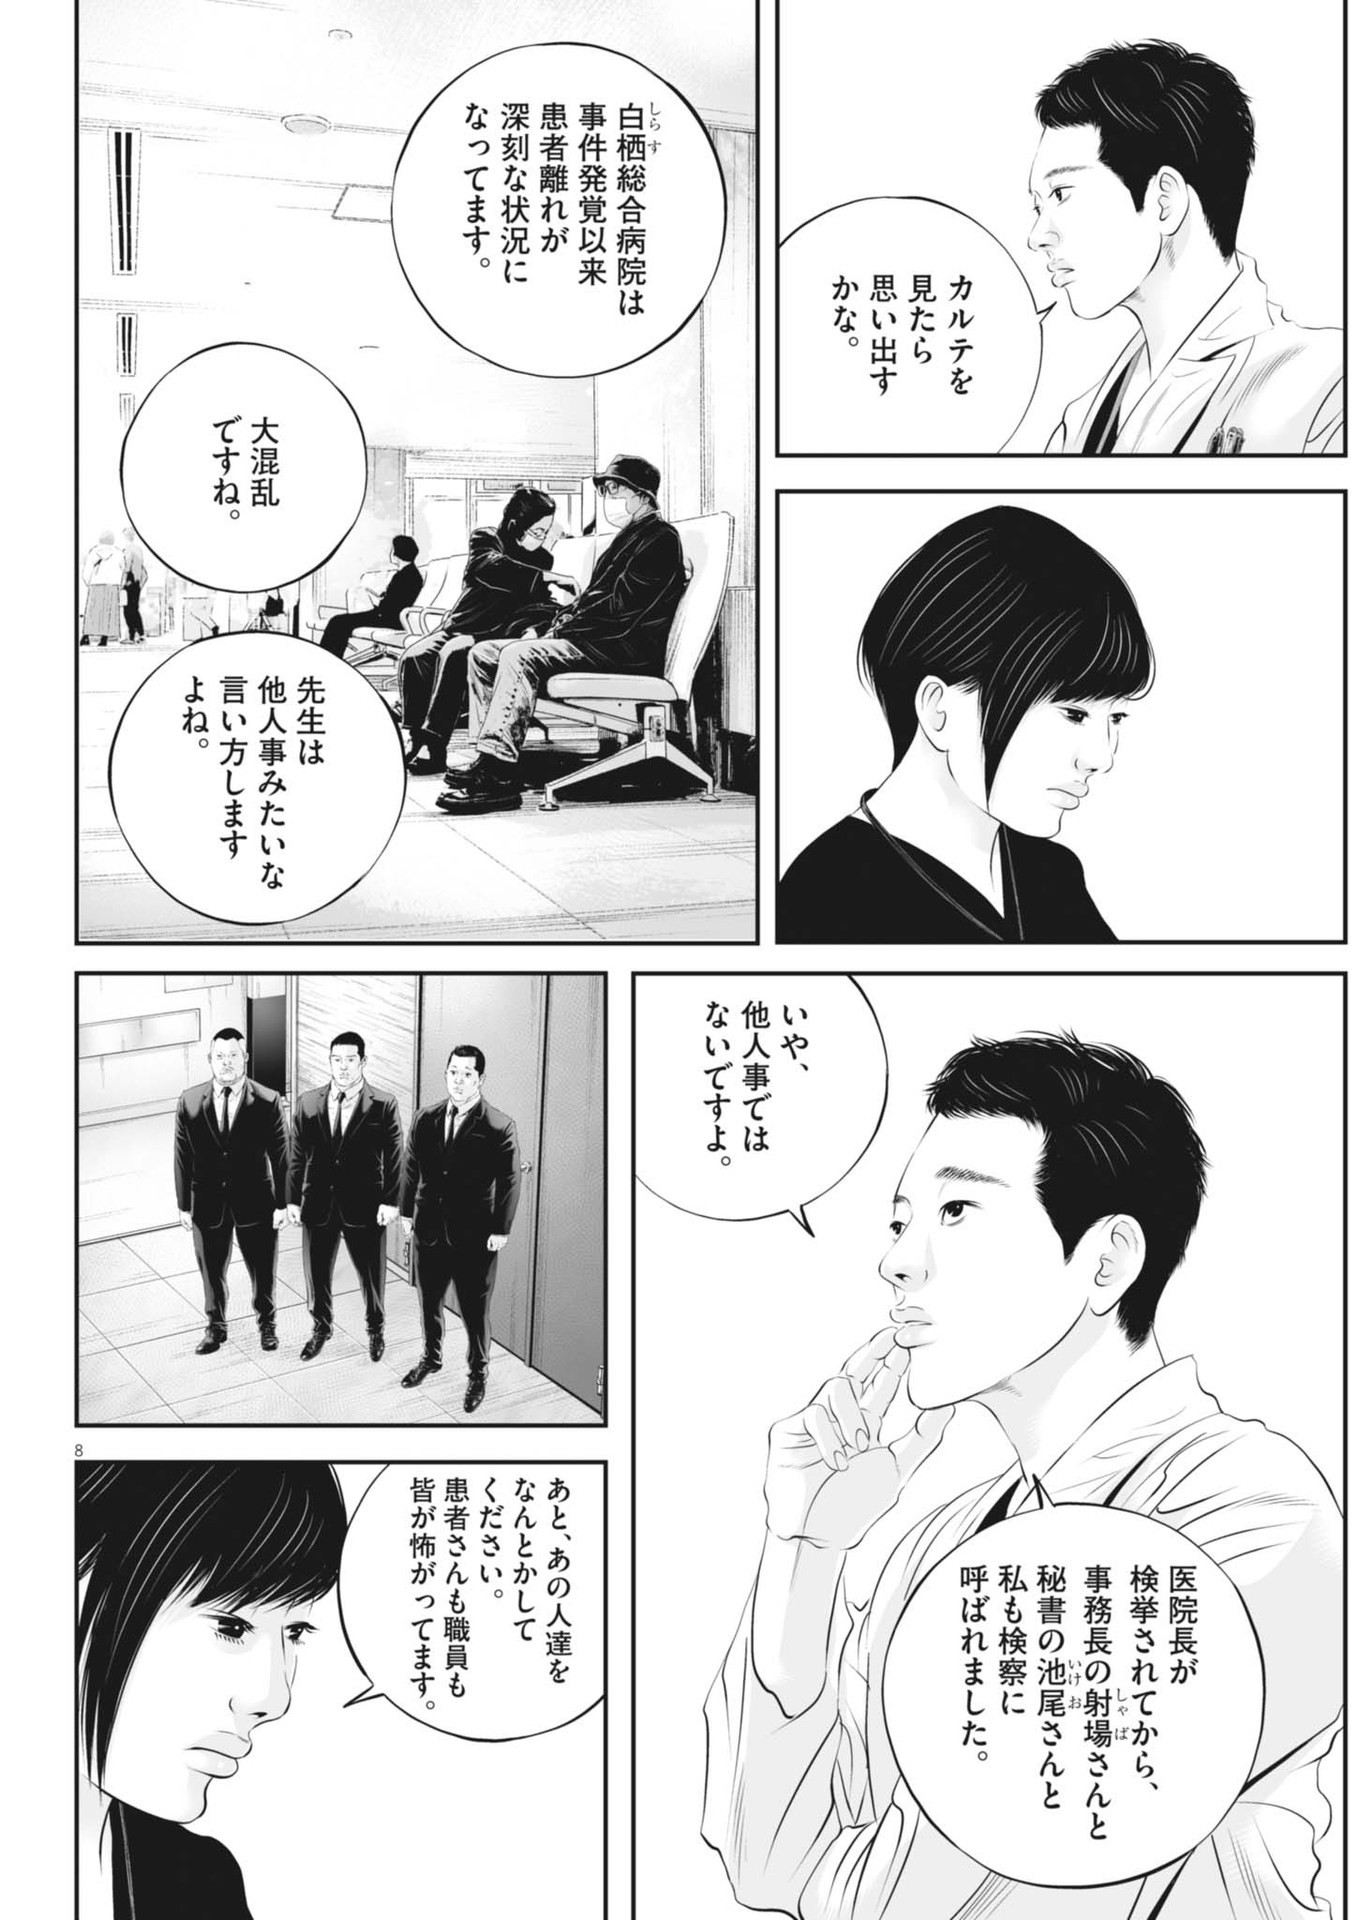 Kujou no Taizai - Chapter 101 - Page 8